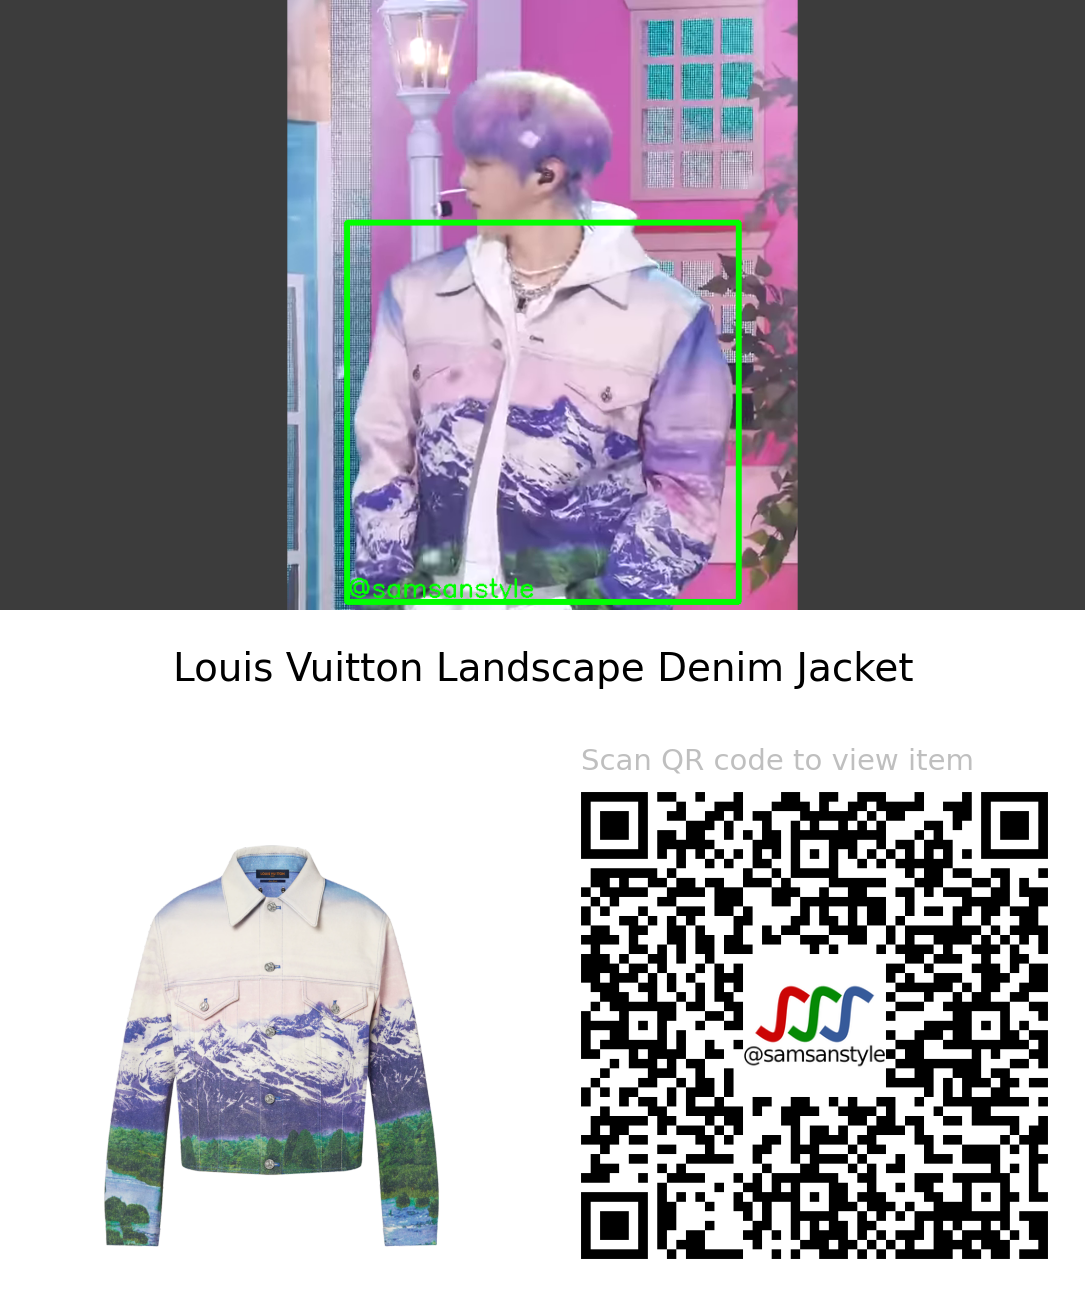 Louis Vuitton Landscape Denim Jacket (LANDSCAPE DENIM JACKET